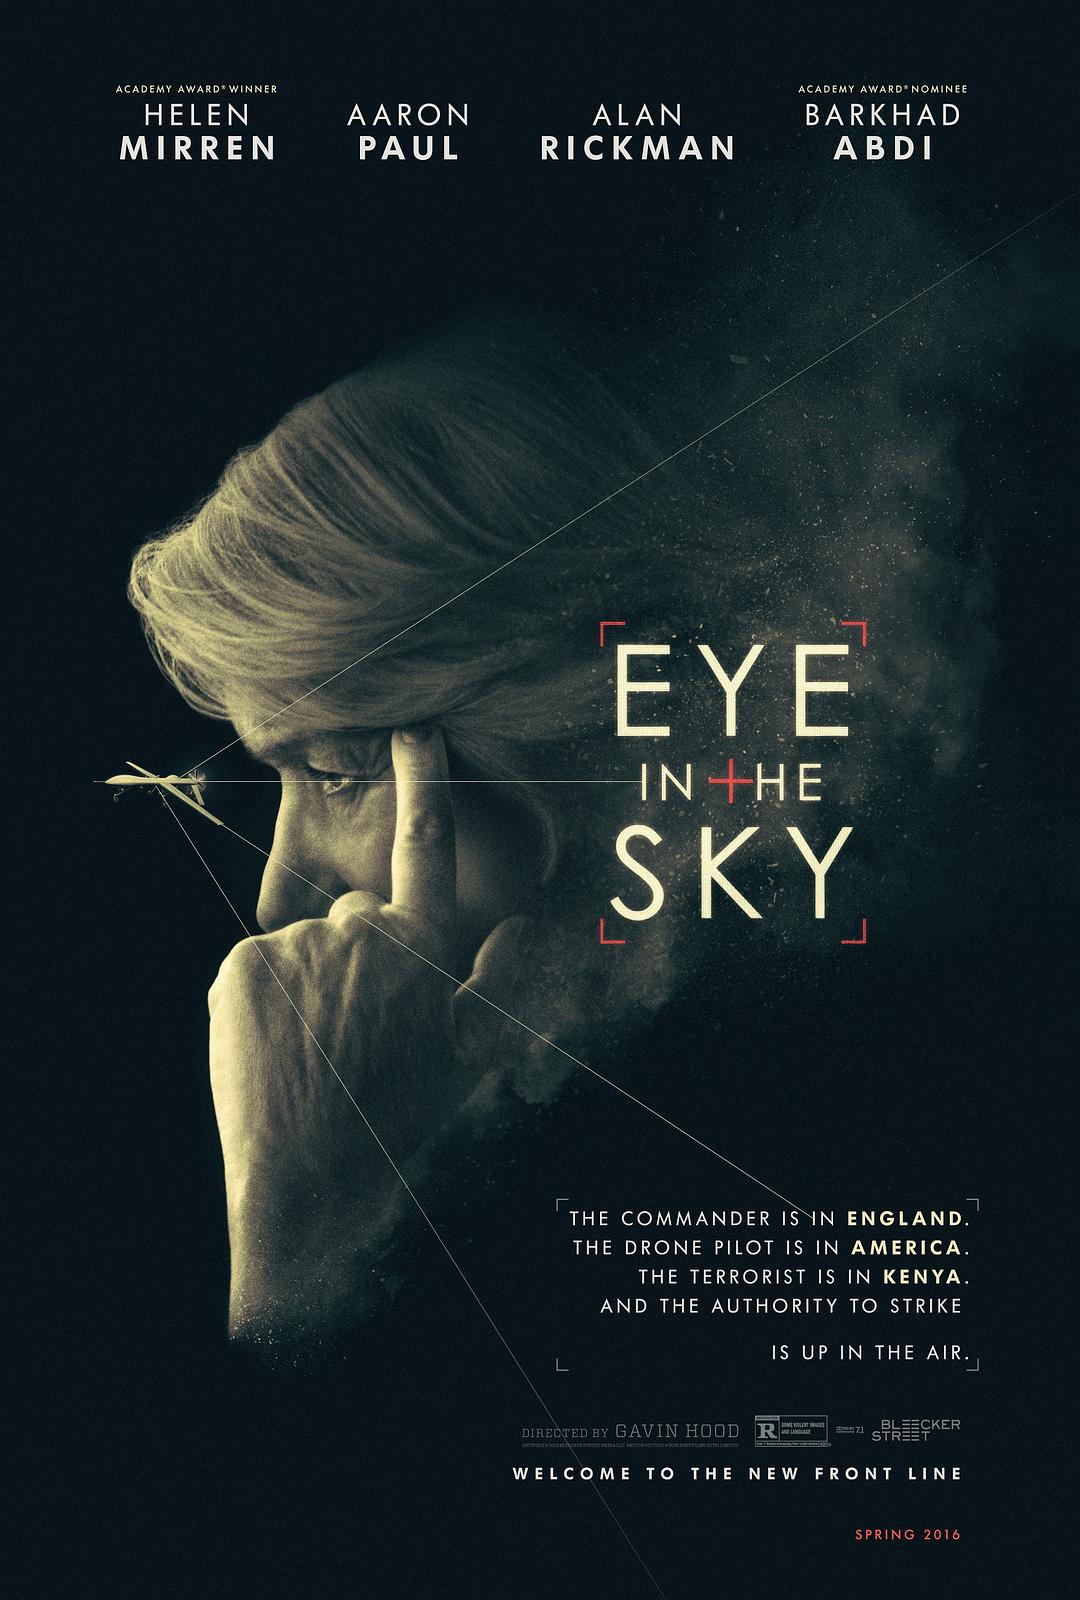 [天空之眼 Eye in the Sky 2015][DIY简繁双语字幕][HDU][30.46GB]-1.jpg